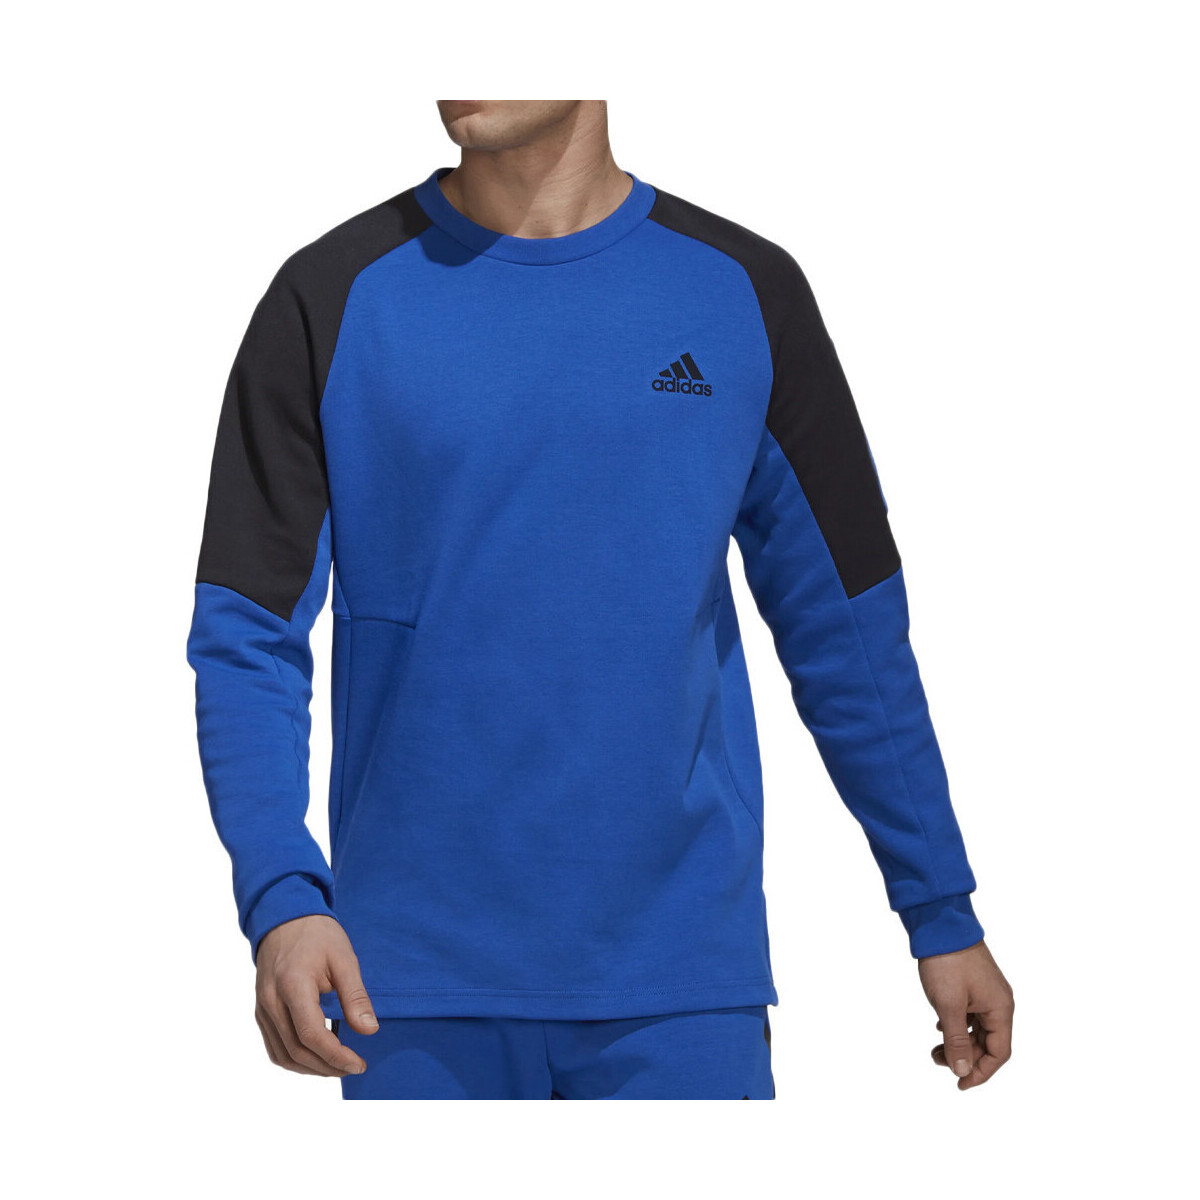 Vêtements Homme Sweats adidas Originals HE9822 Bleu